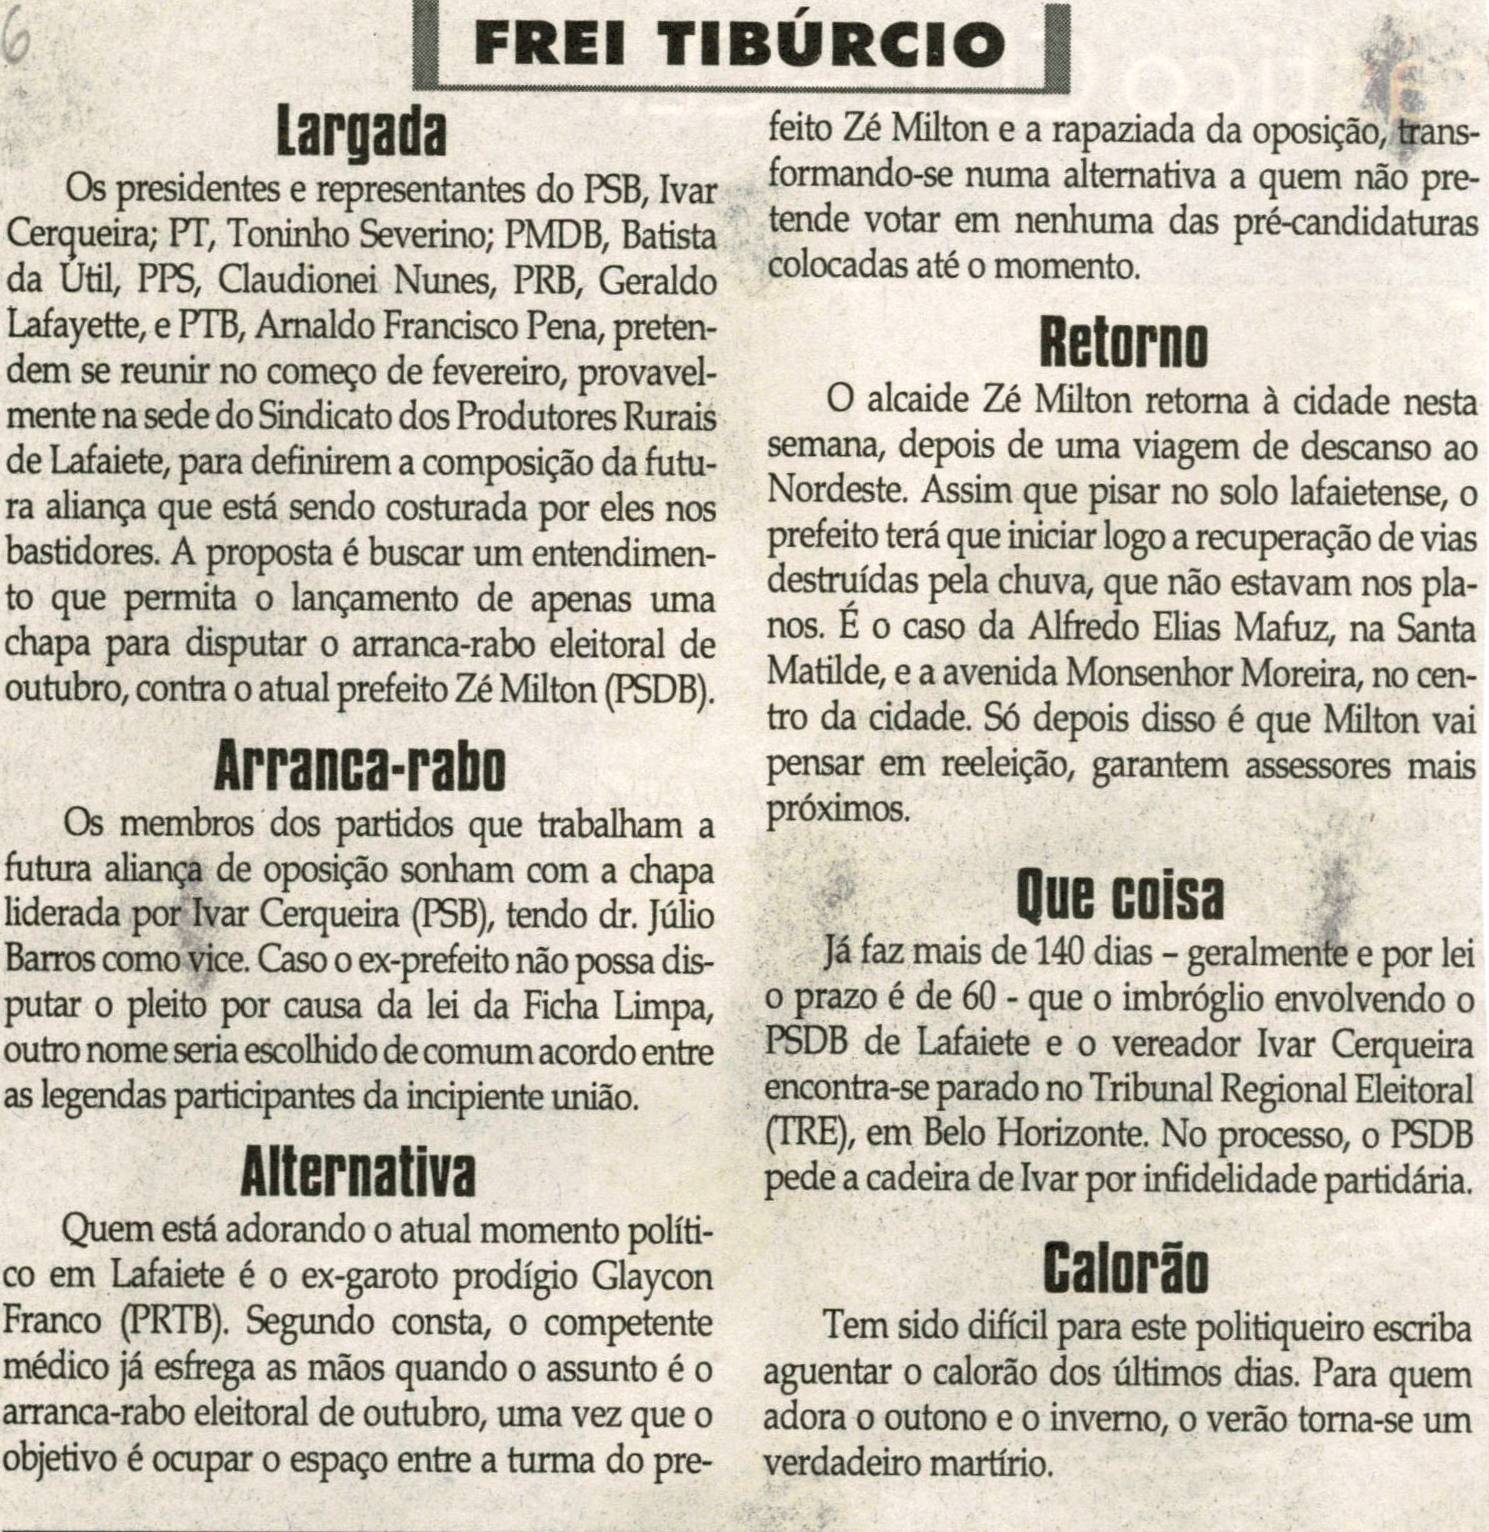 Largada. Jornal Correio da Cidade, Conselheiro Lafaiete, 25 fev. 2012,  Frei Tibúrcio, p. 06.